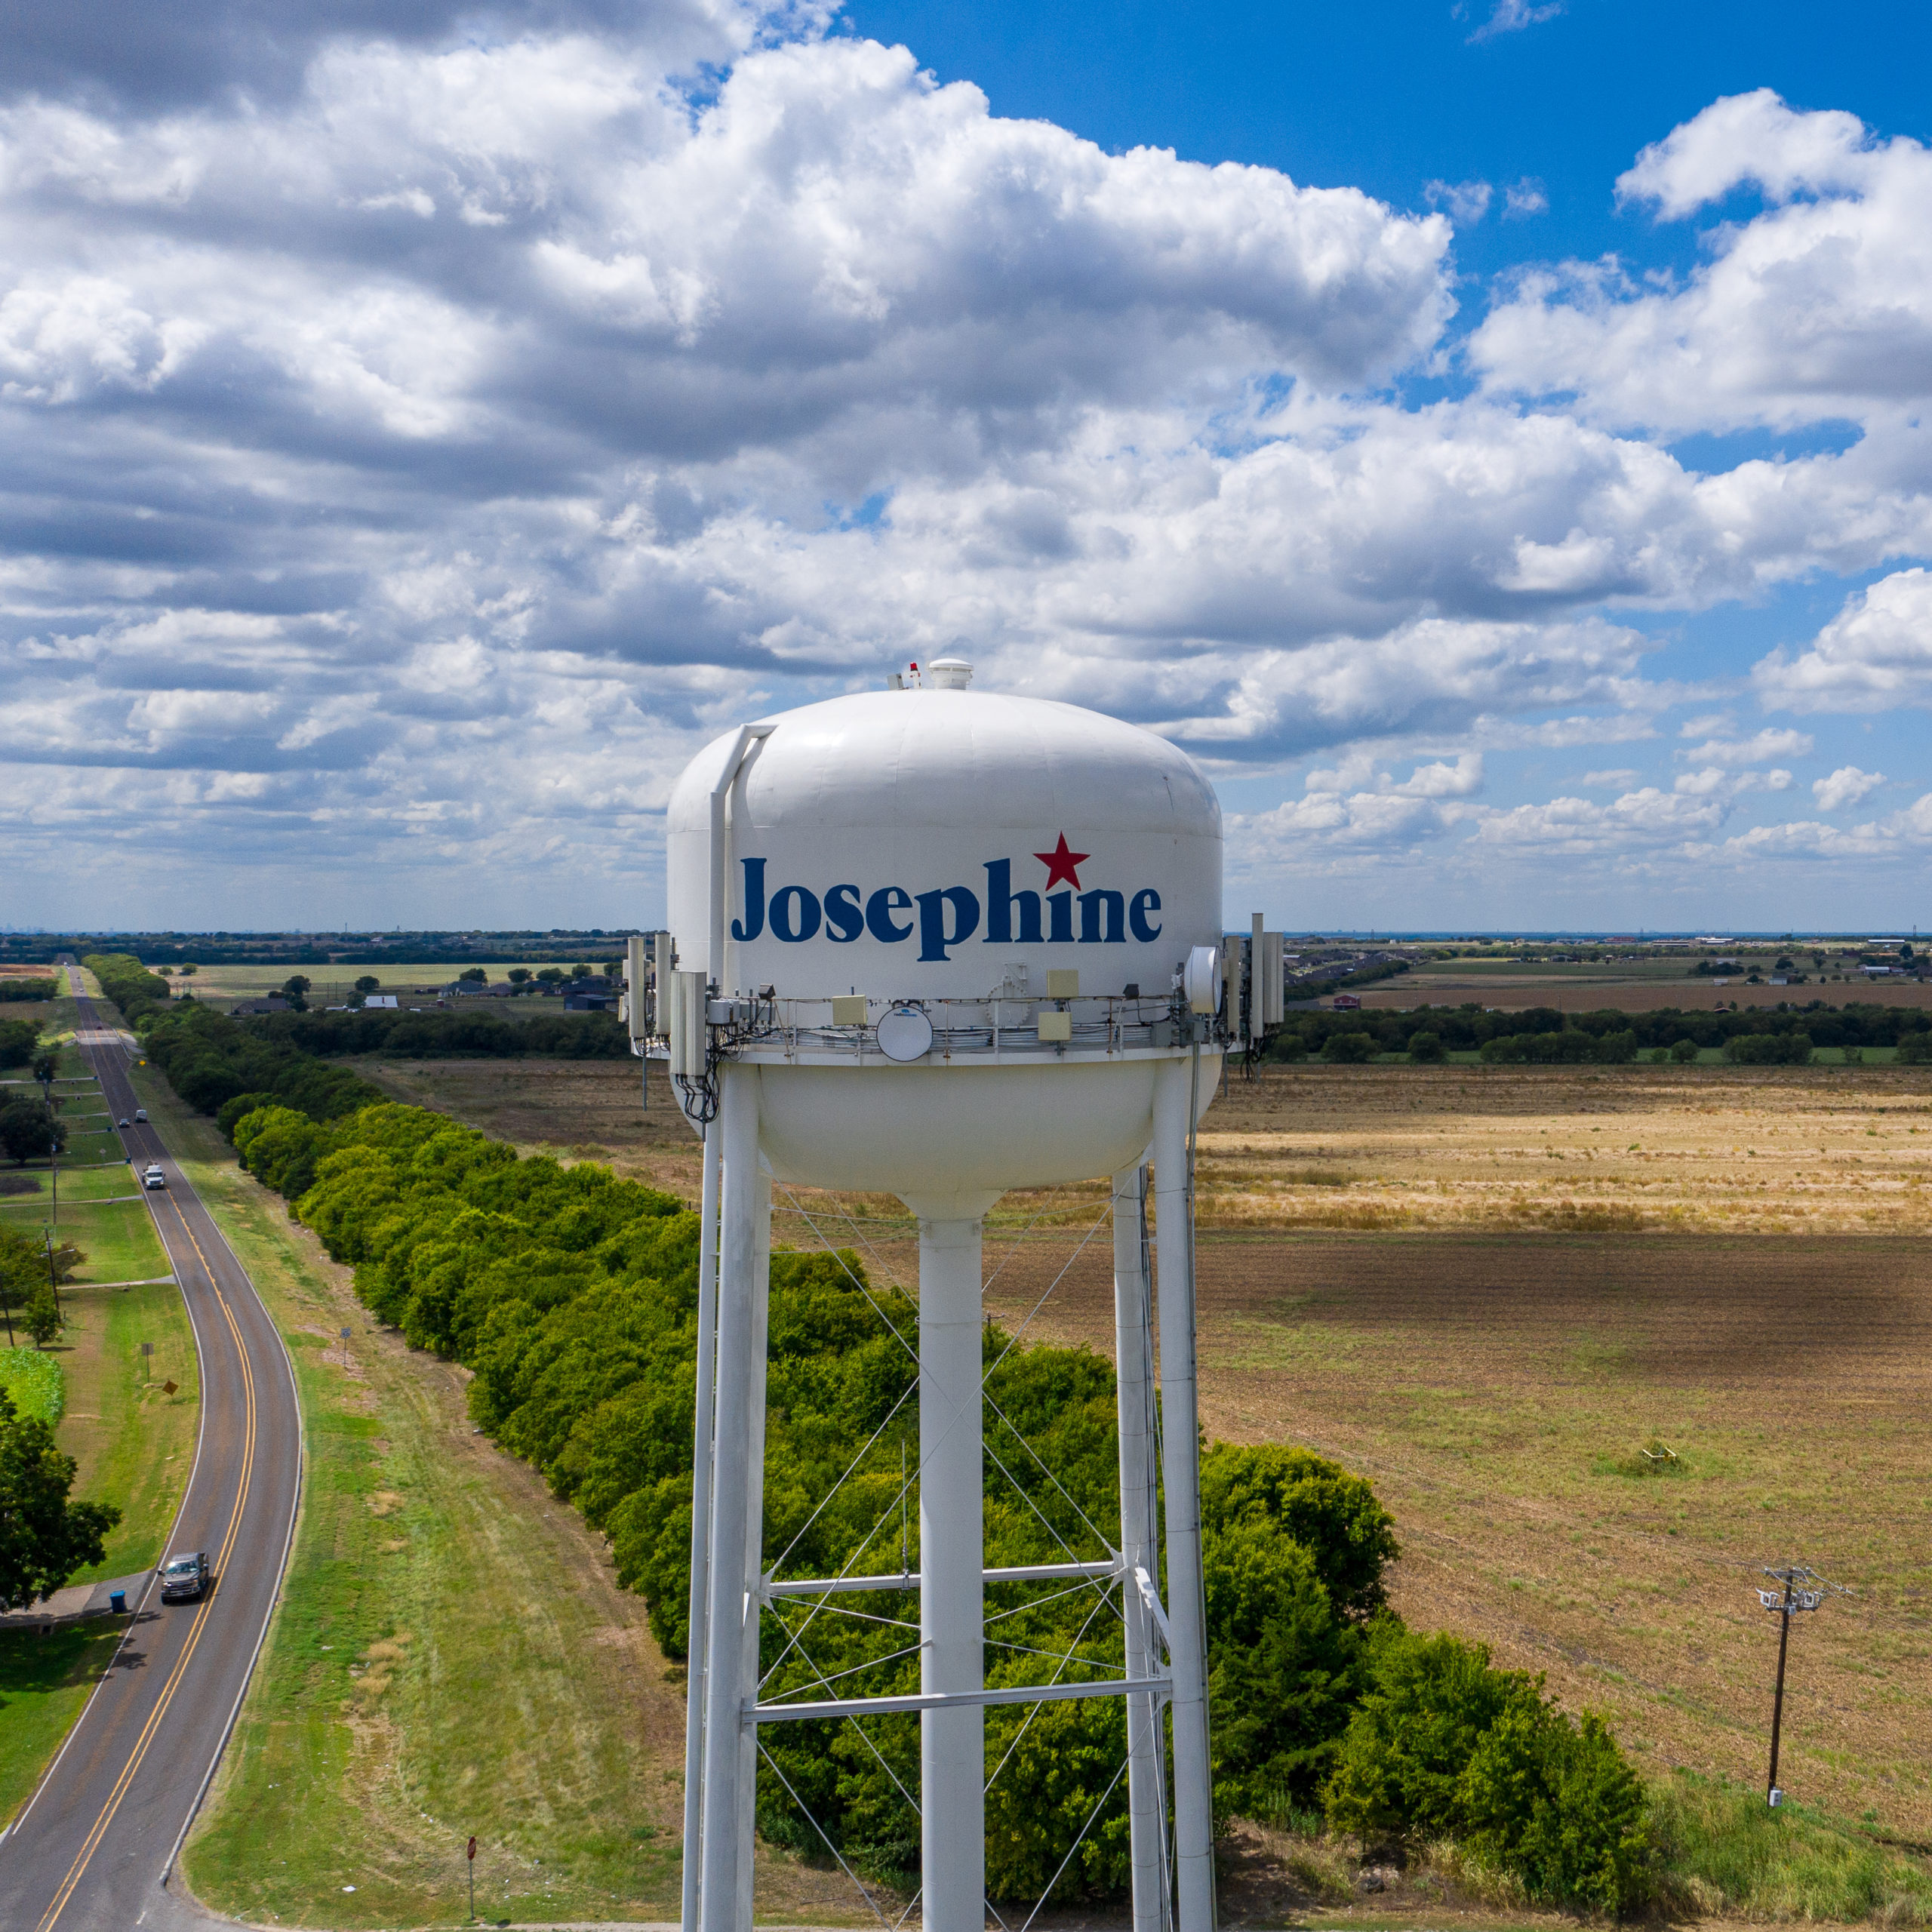 Josephine, Texas